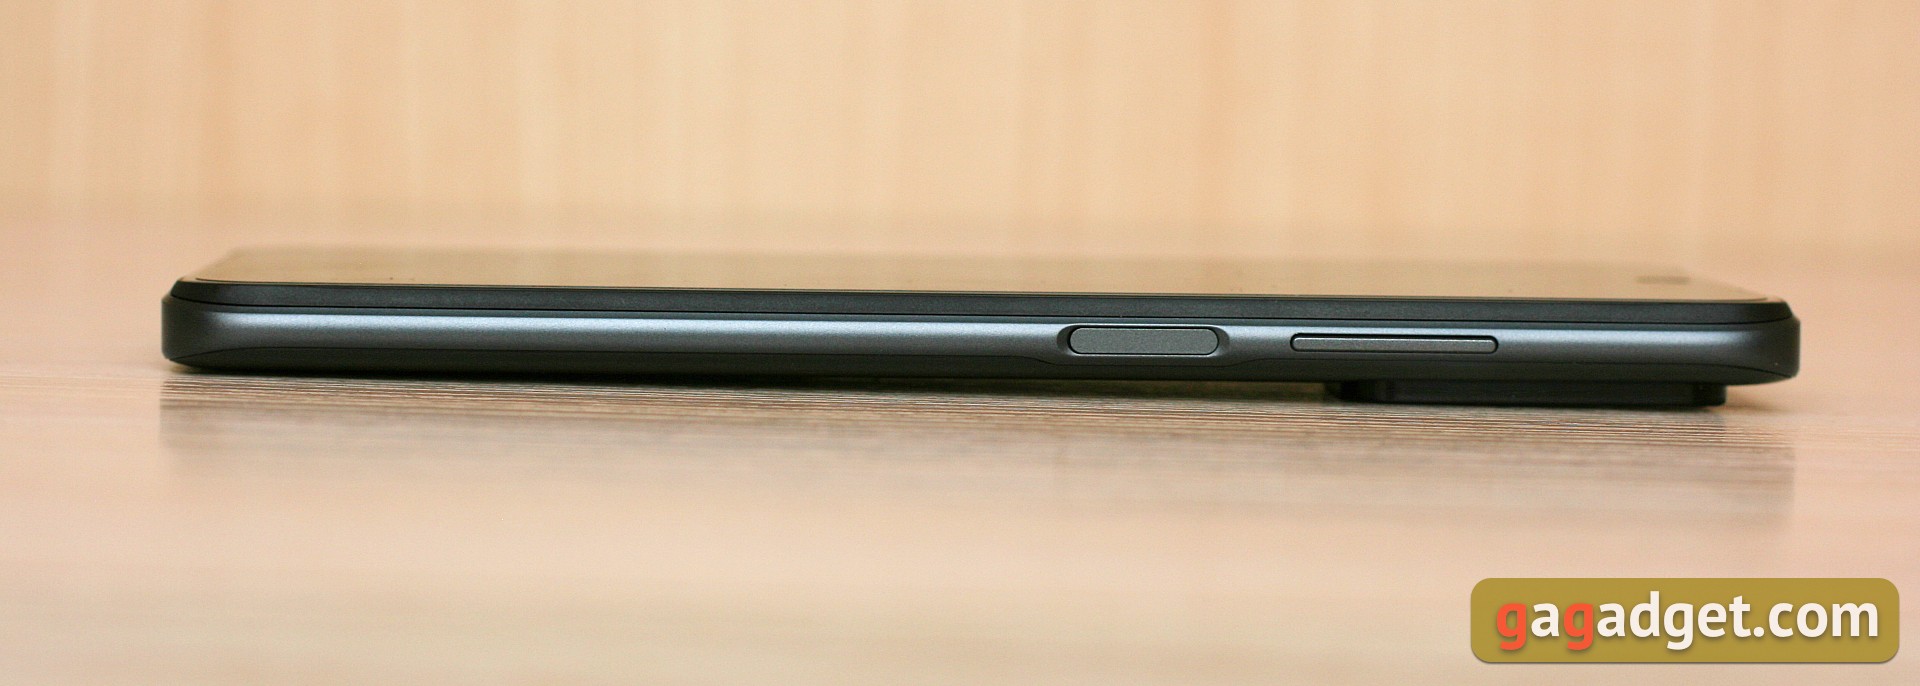 Xiaomi Redmi 10 Test: Der legendäre Budget-Hersteller, jetzt mit einer 50-Megapixel-Kamera-8